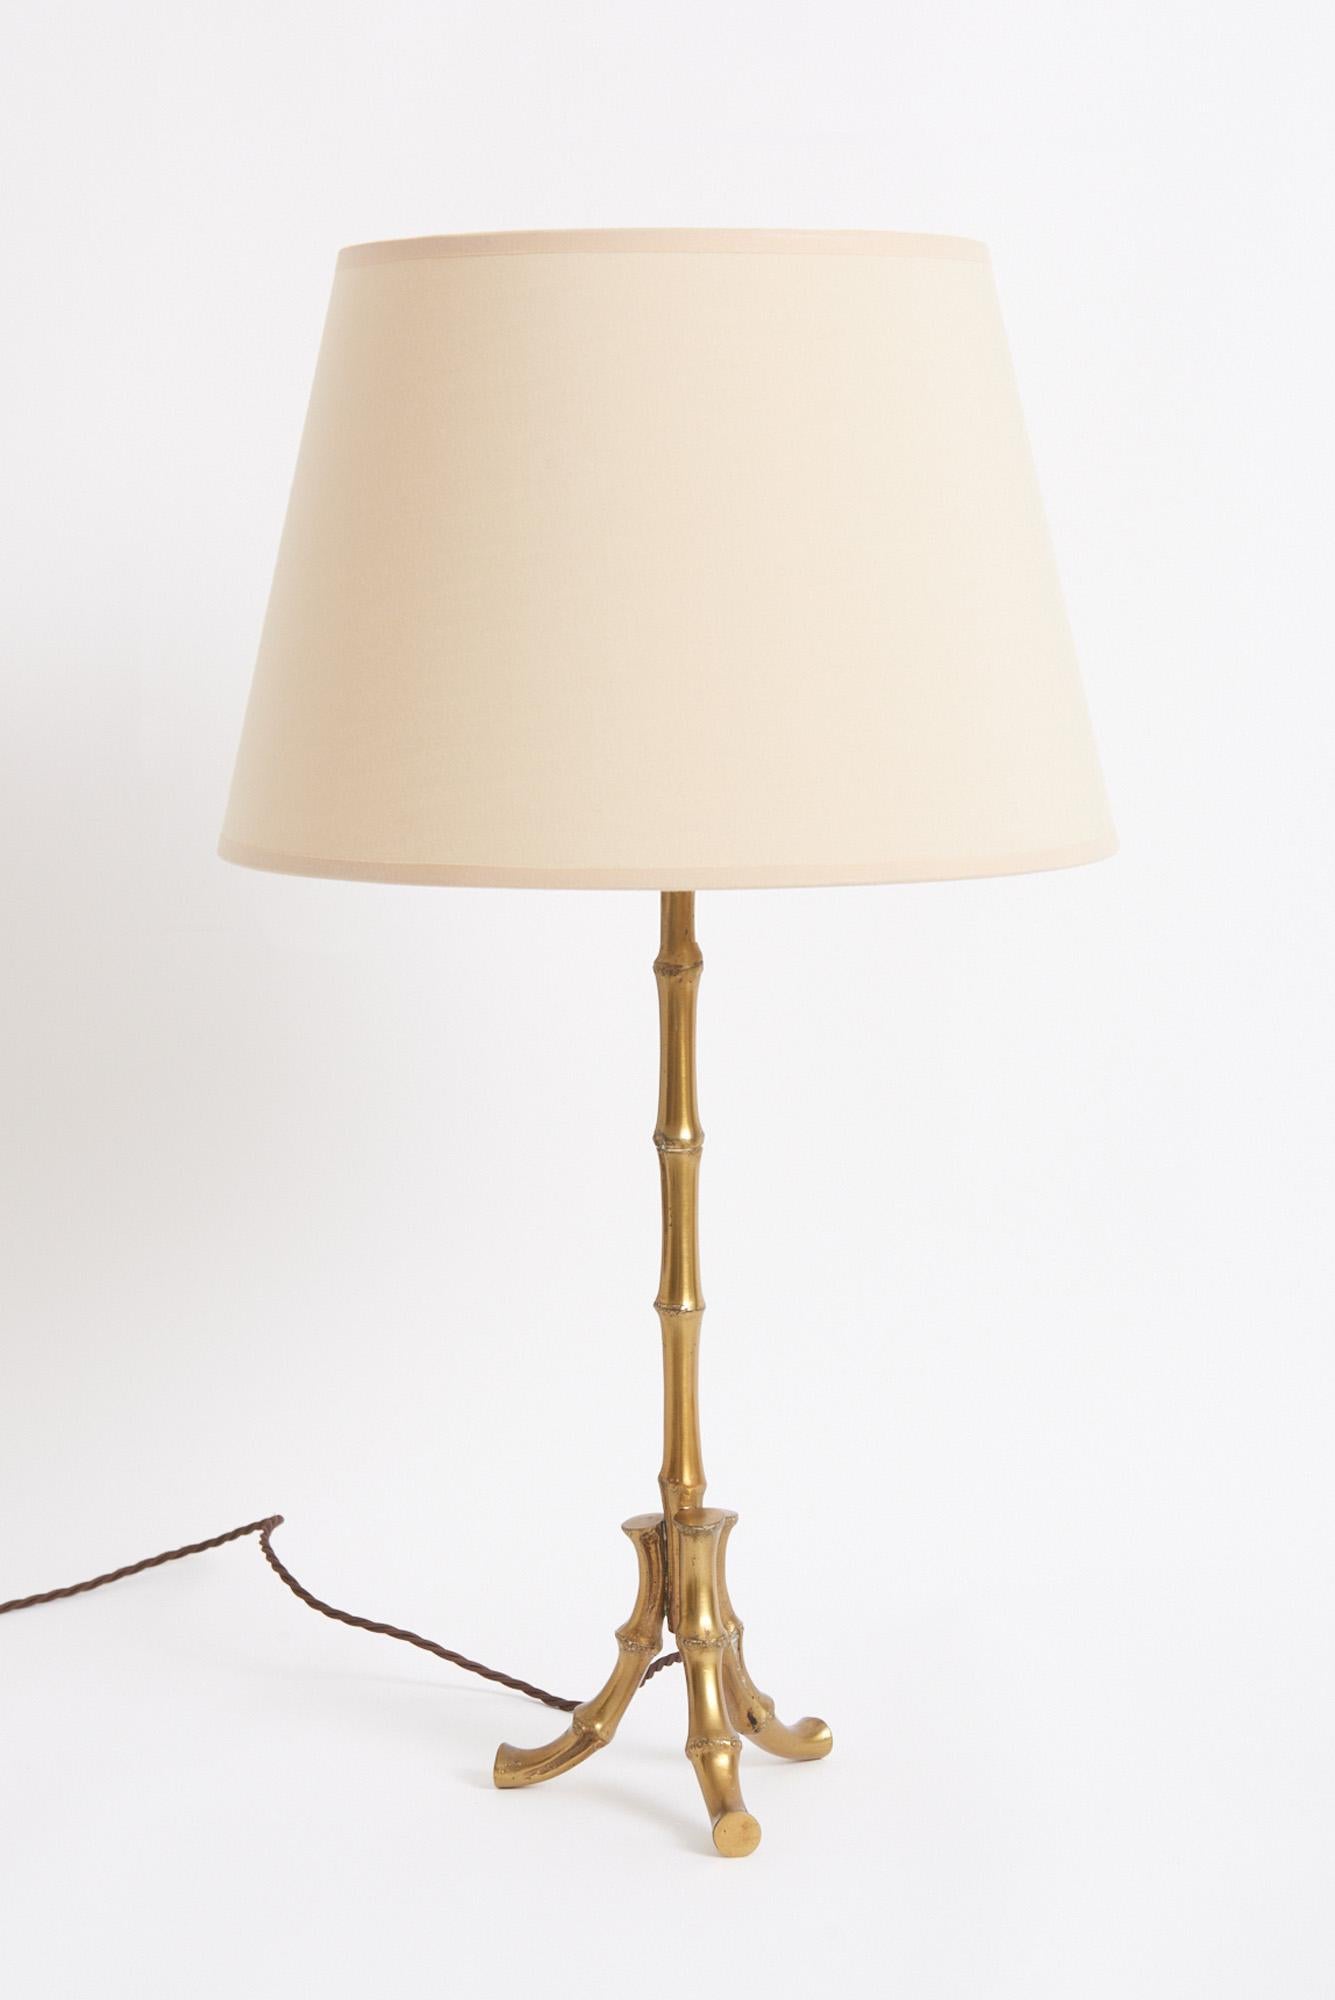 Lampe de table en bambou stylisé en laiton, peut-être de la Maison Baguès.
France, milieu du 20e siècle
Avec l'abat-jour : 61 cm de haut par 30,5 cm de diamètre
Base de la lampe uniquement : 45 cm de haut par 15 cm de diamètre